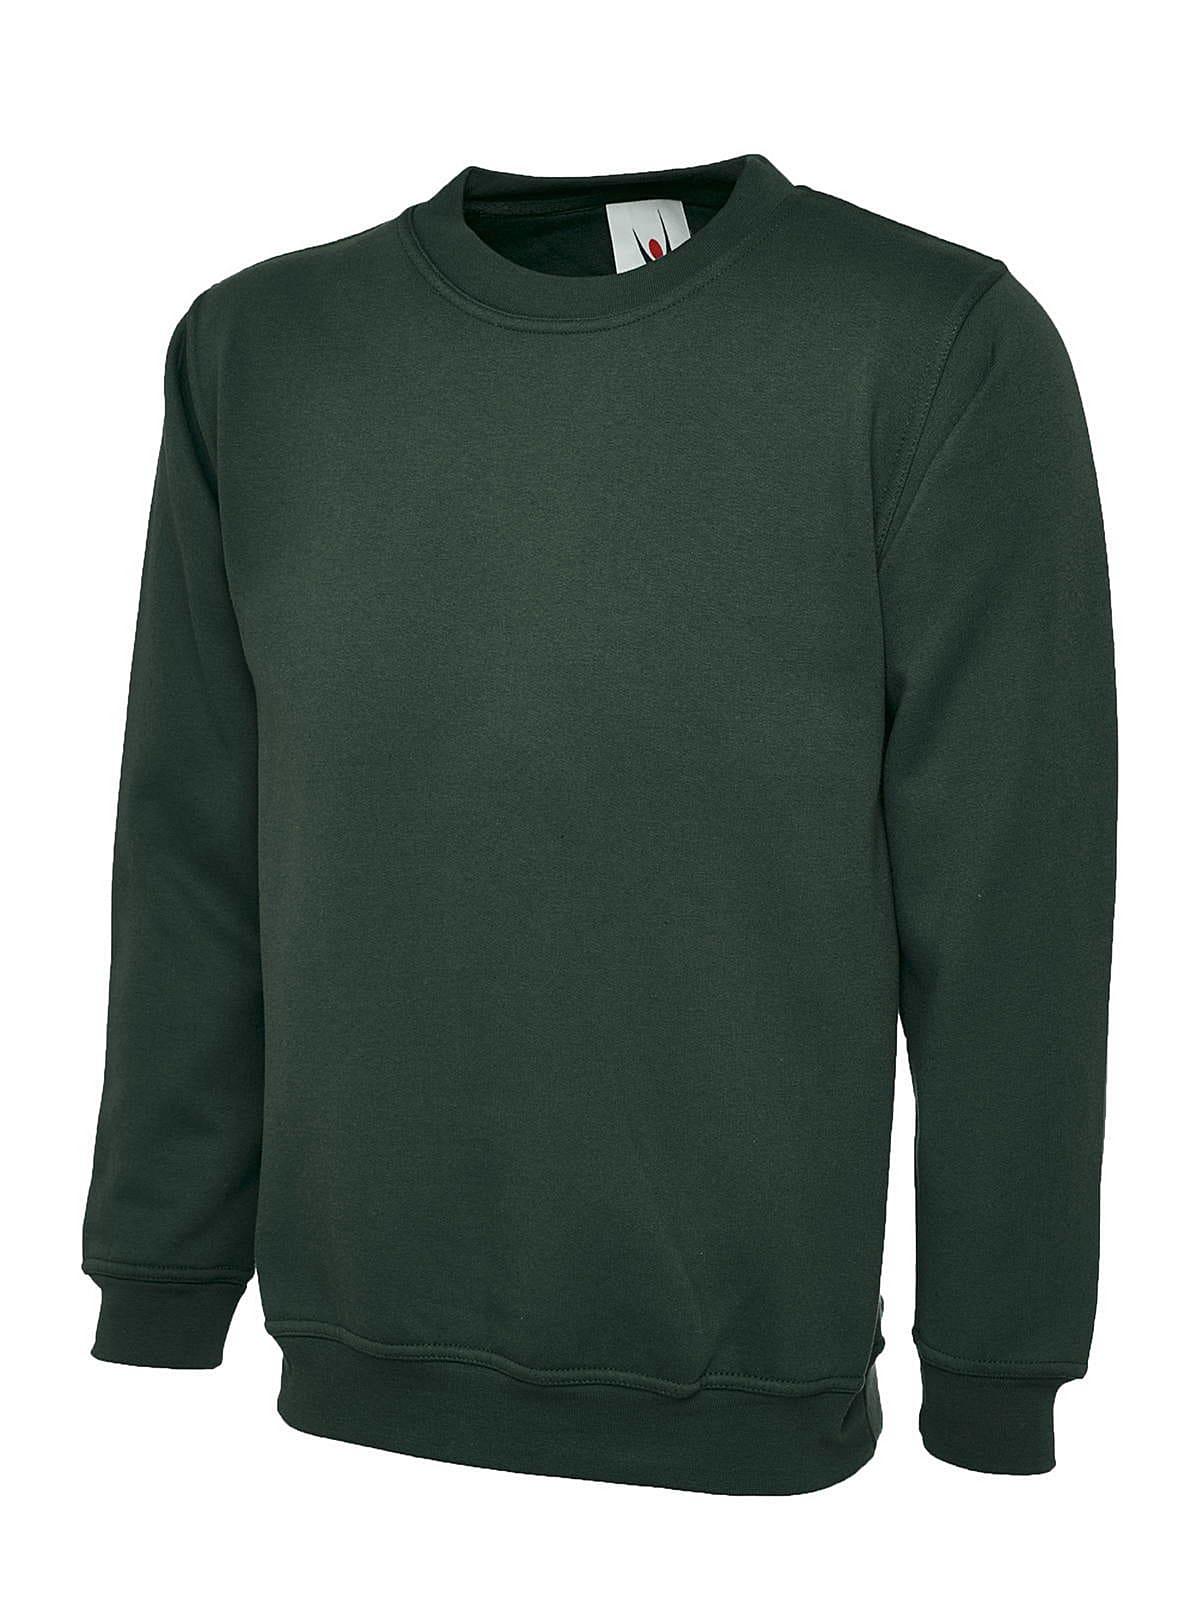 Uneek 300GSM Classic Sweatshirt in Bottle Green (Product Code: UC203)